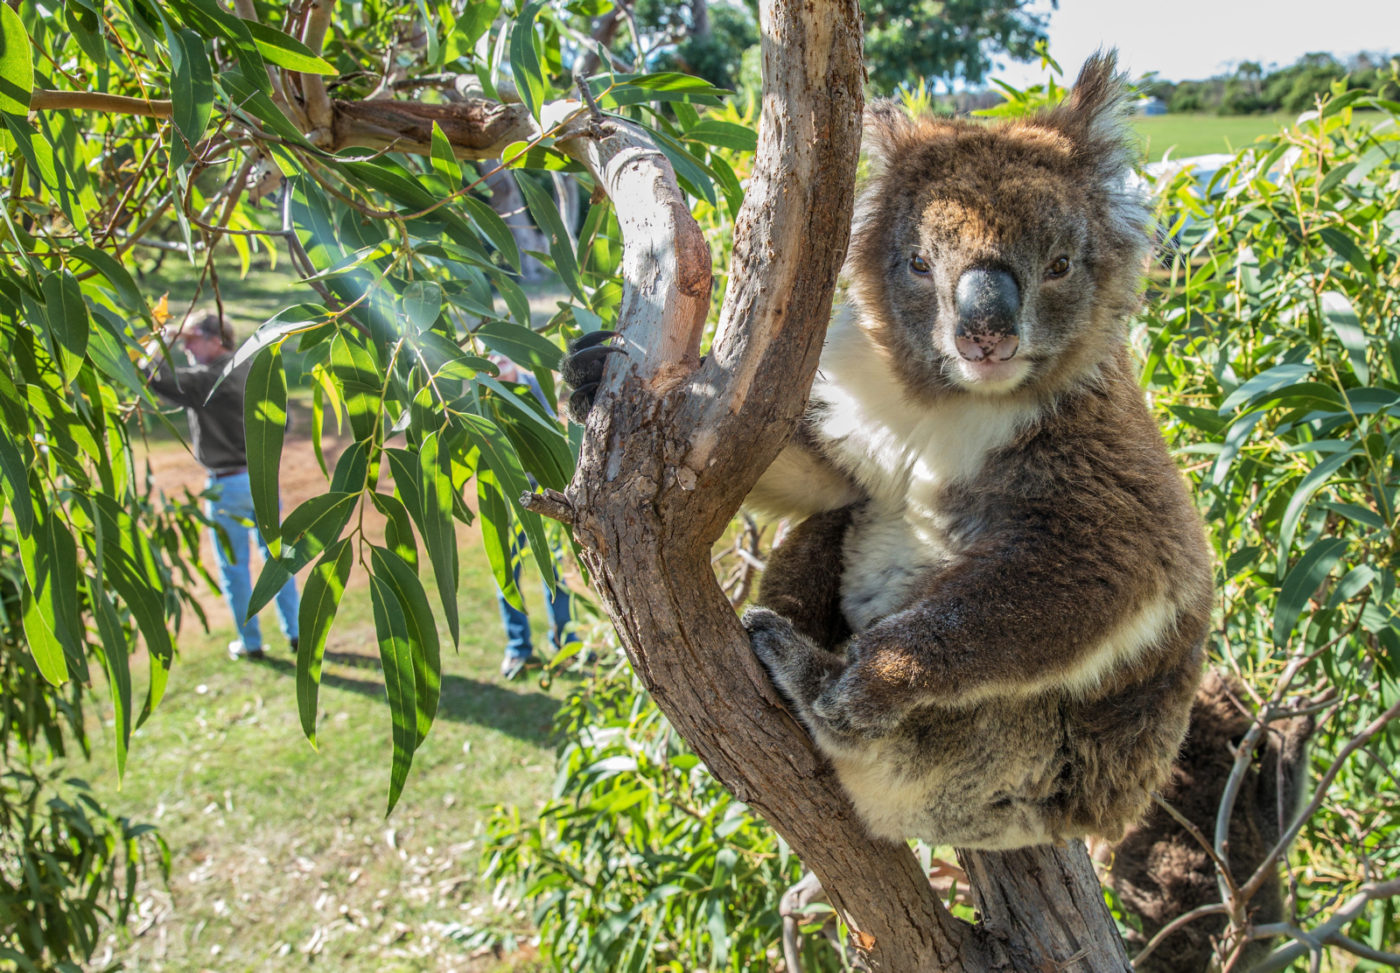 Koala at Mikkira Station. Port Lincoln. Photo courtesy of Tourism Australia